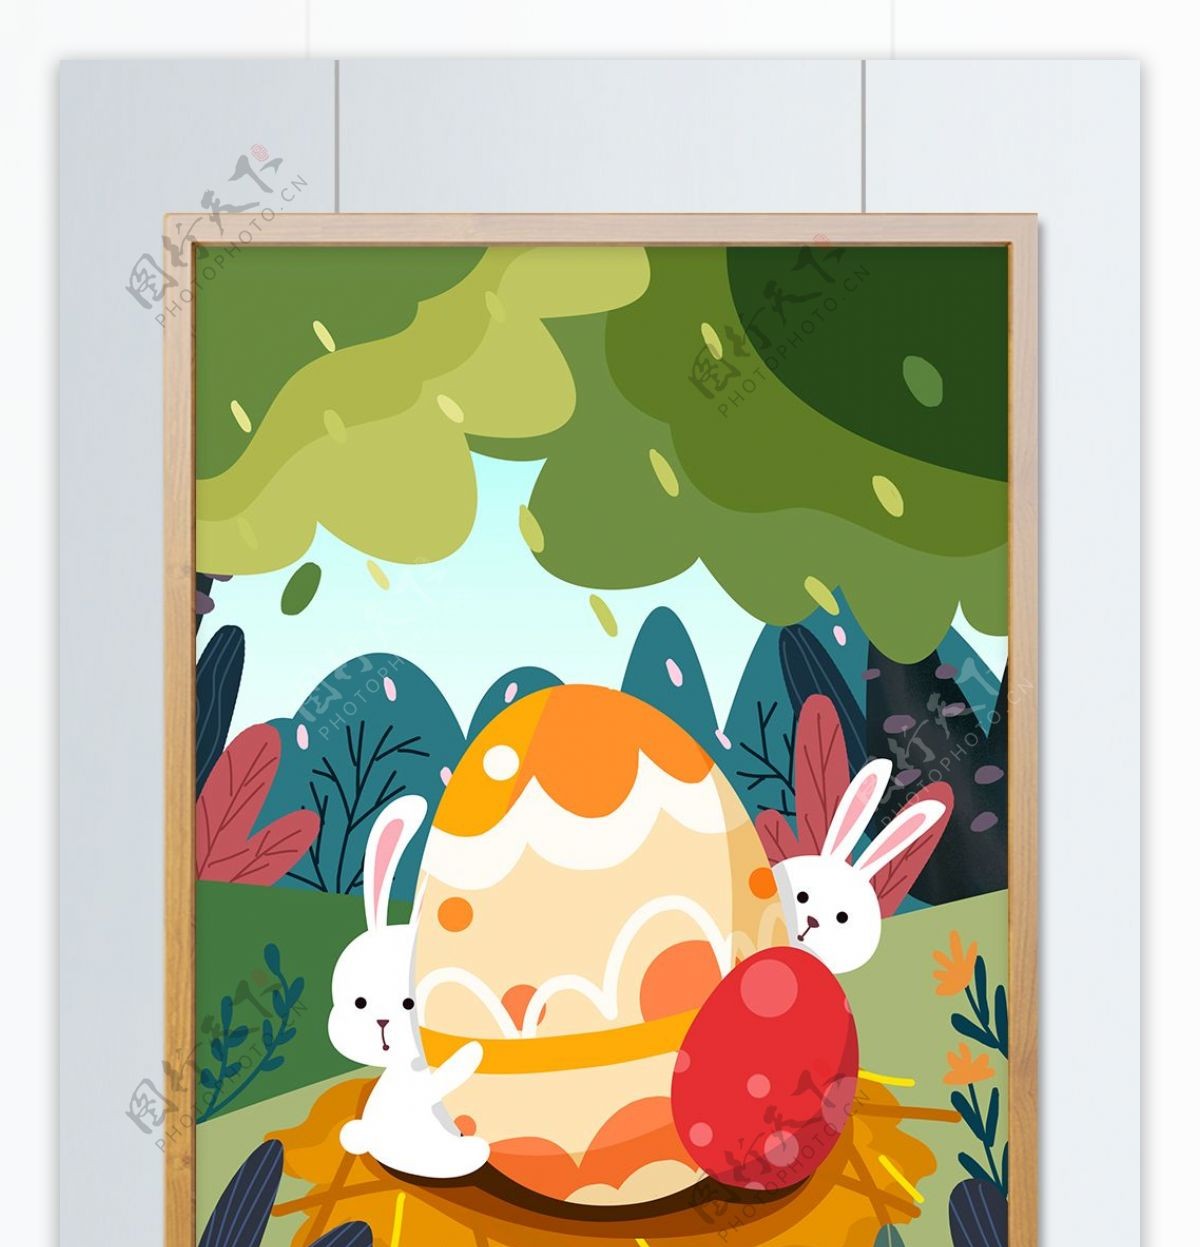 复活节卡通可爱白兔子彩蛋森林